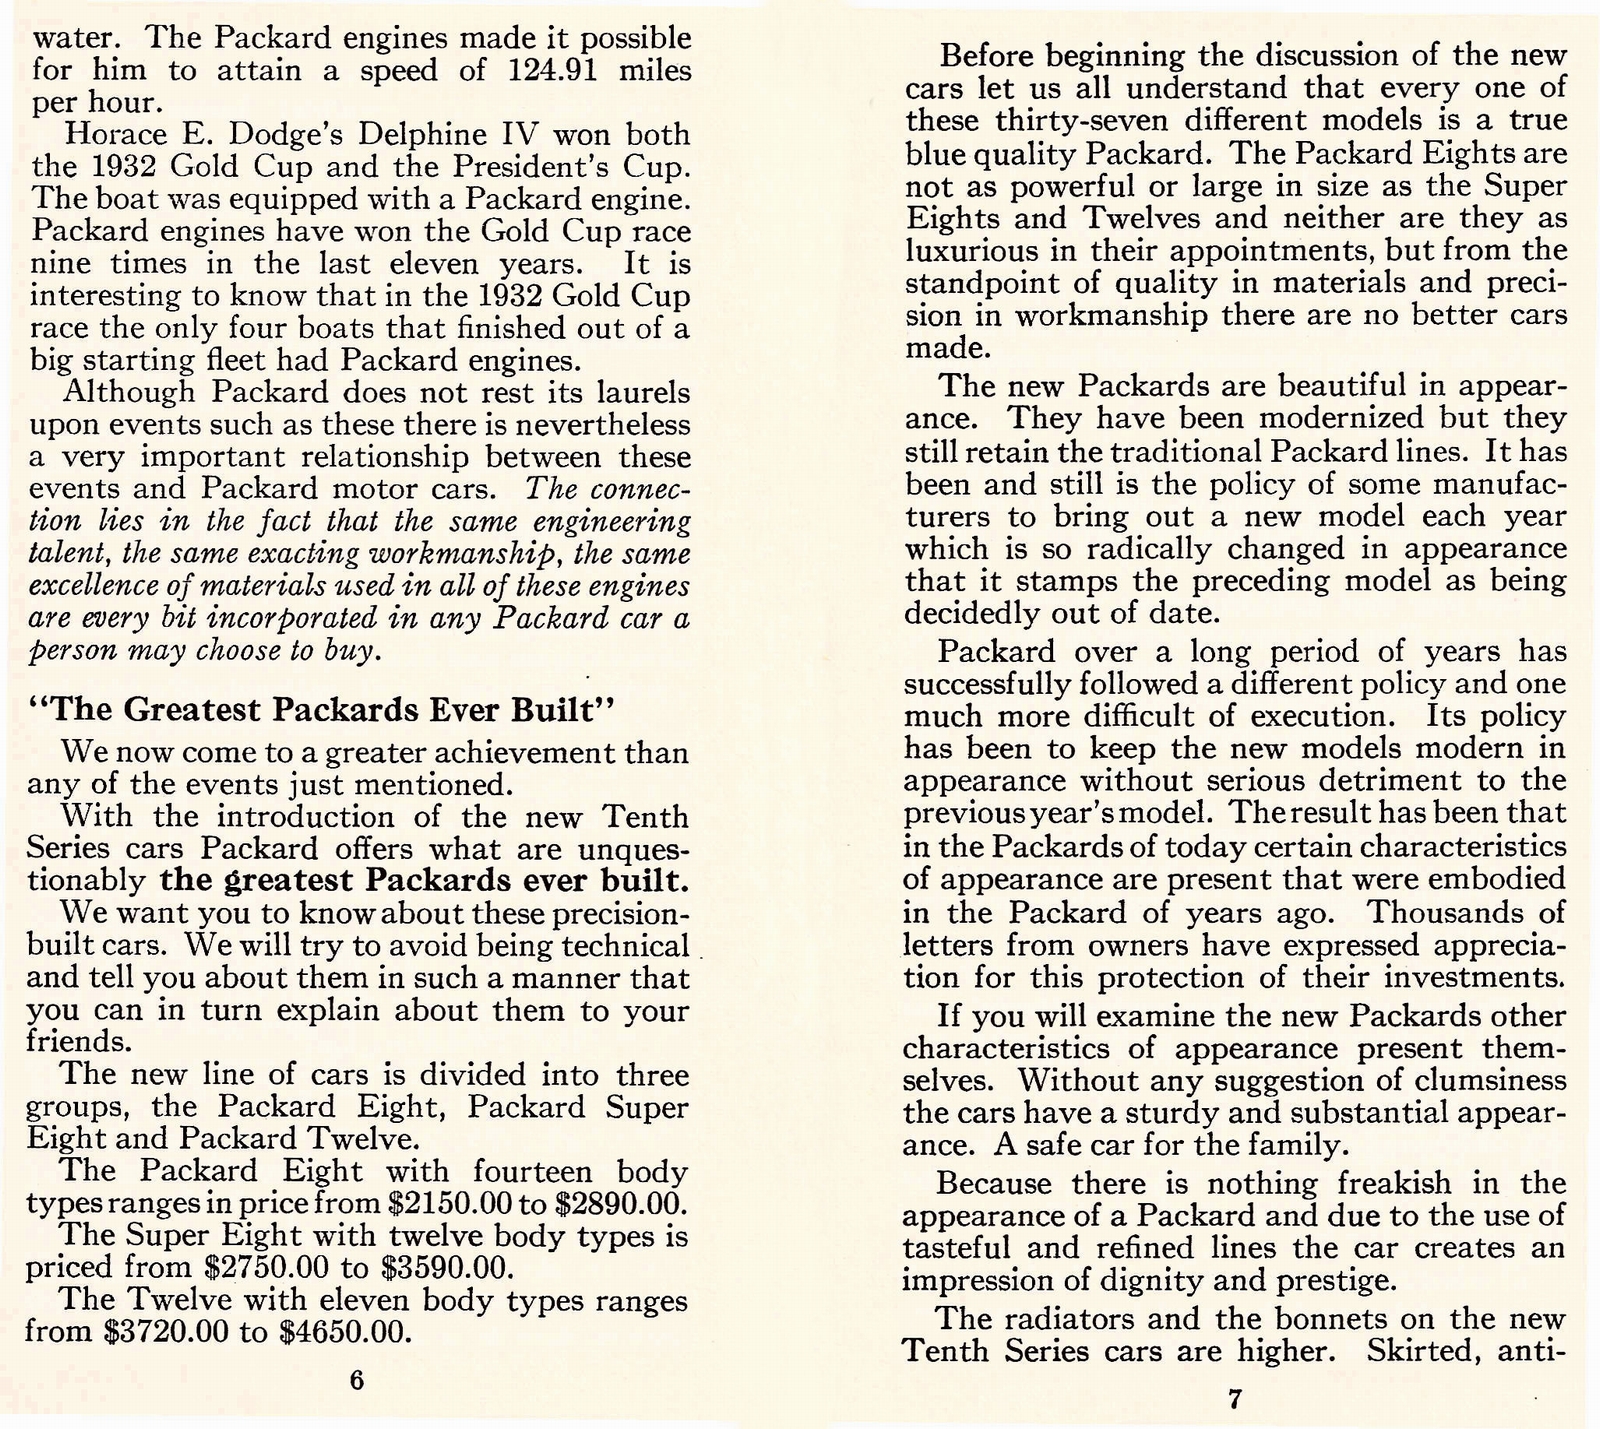 n_1933 Packard Facts Booklet-06-07.jpg